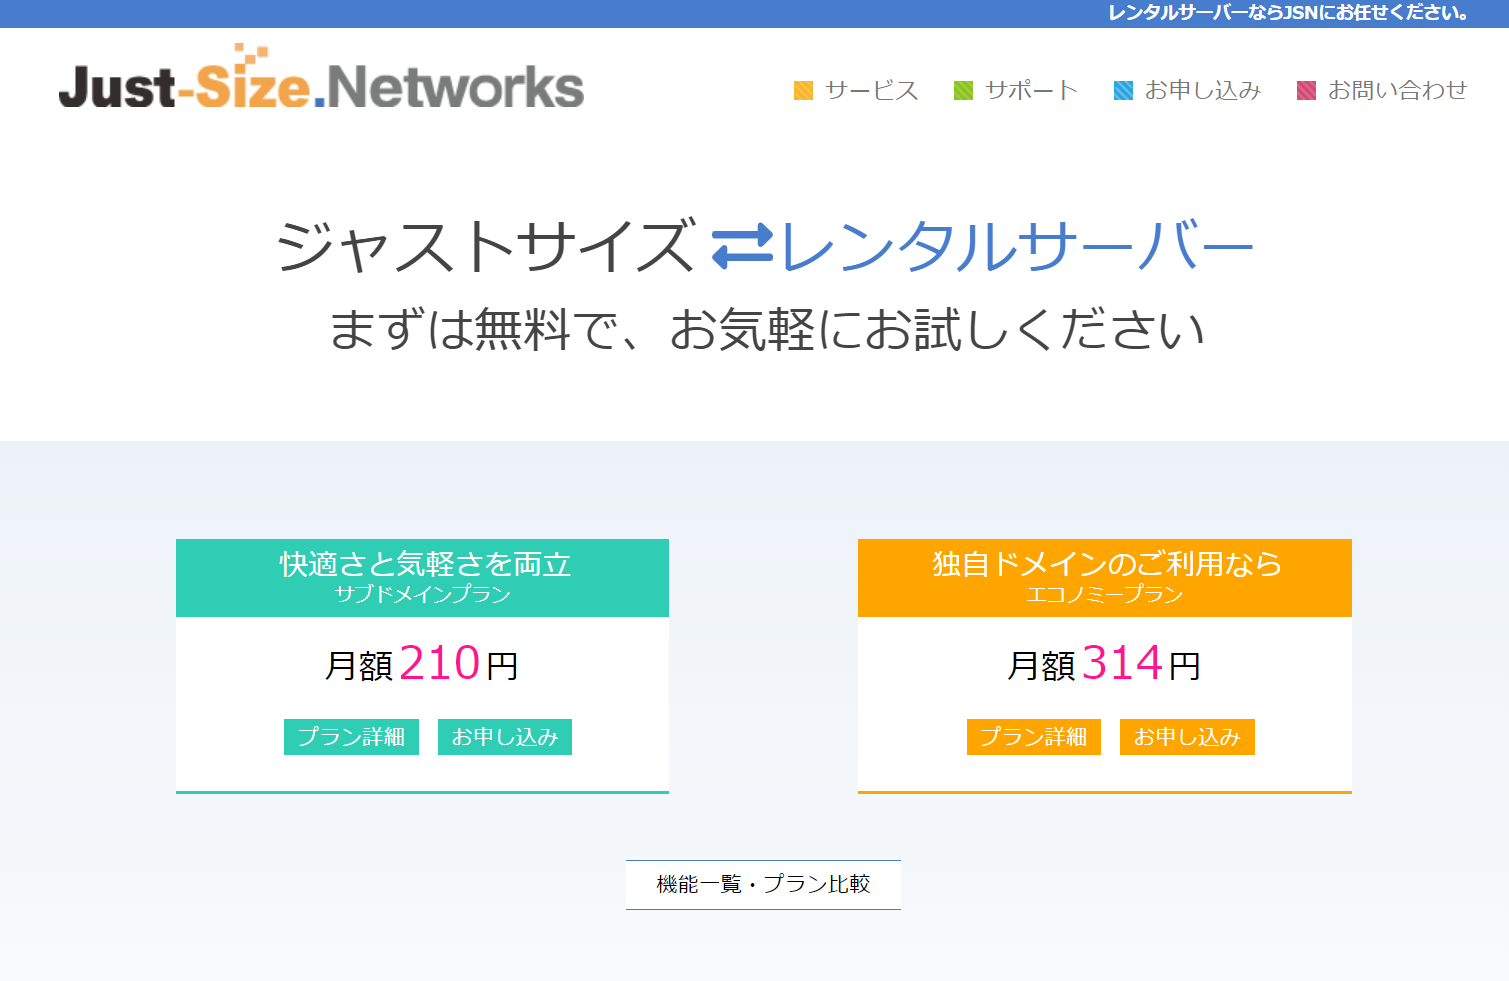 創作・同人に使える有料レンタルサーバー Just-Size.Networks